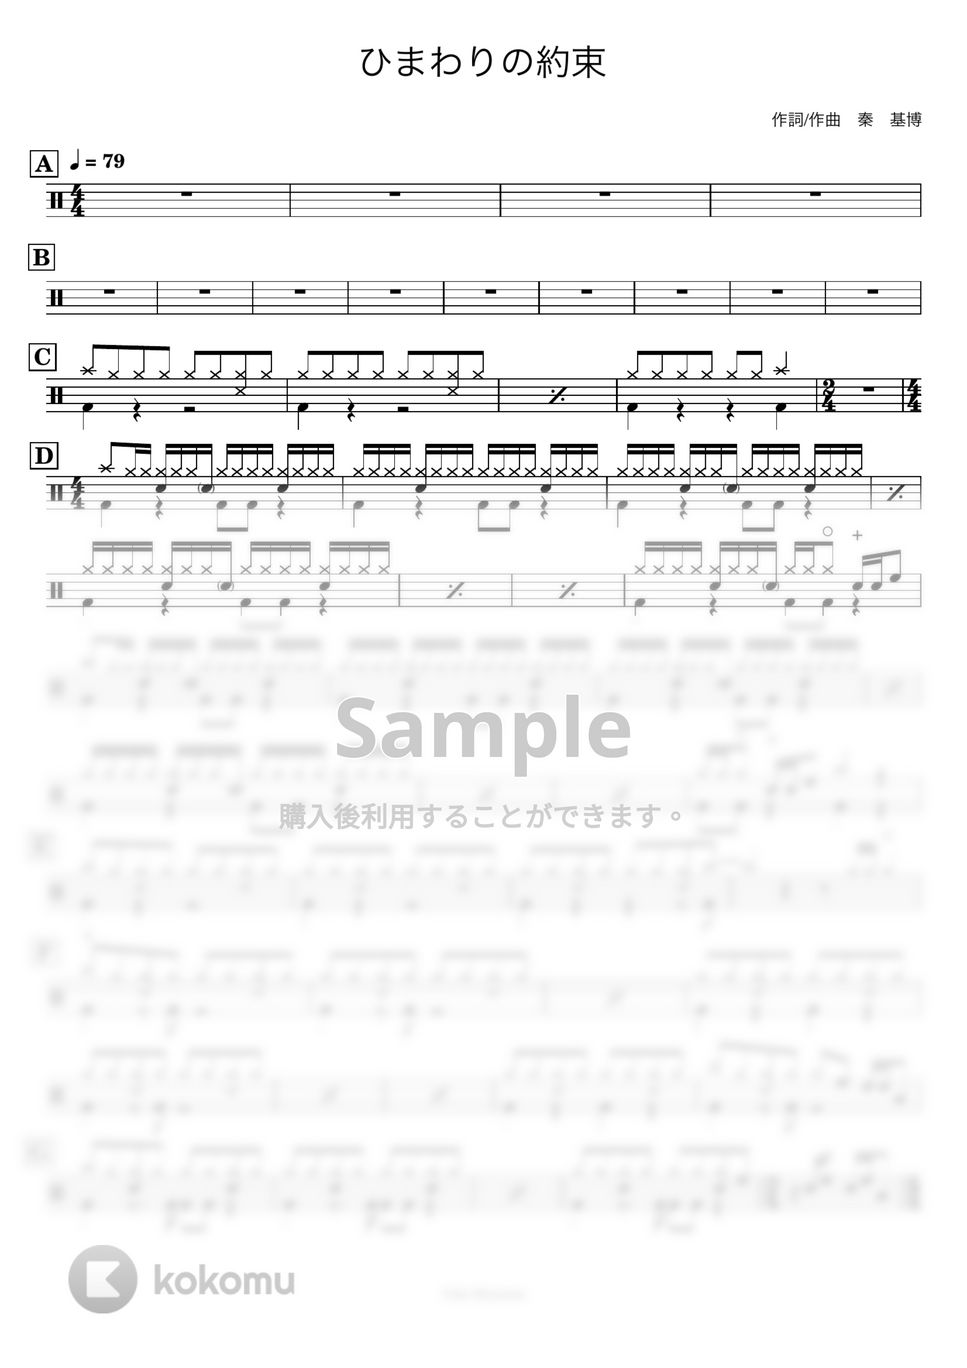 秦基博 - 【ドラム譜】ひまわりの約束【完コピ】 by Taiki Mizumoto